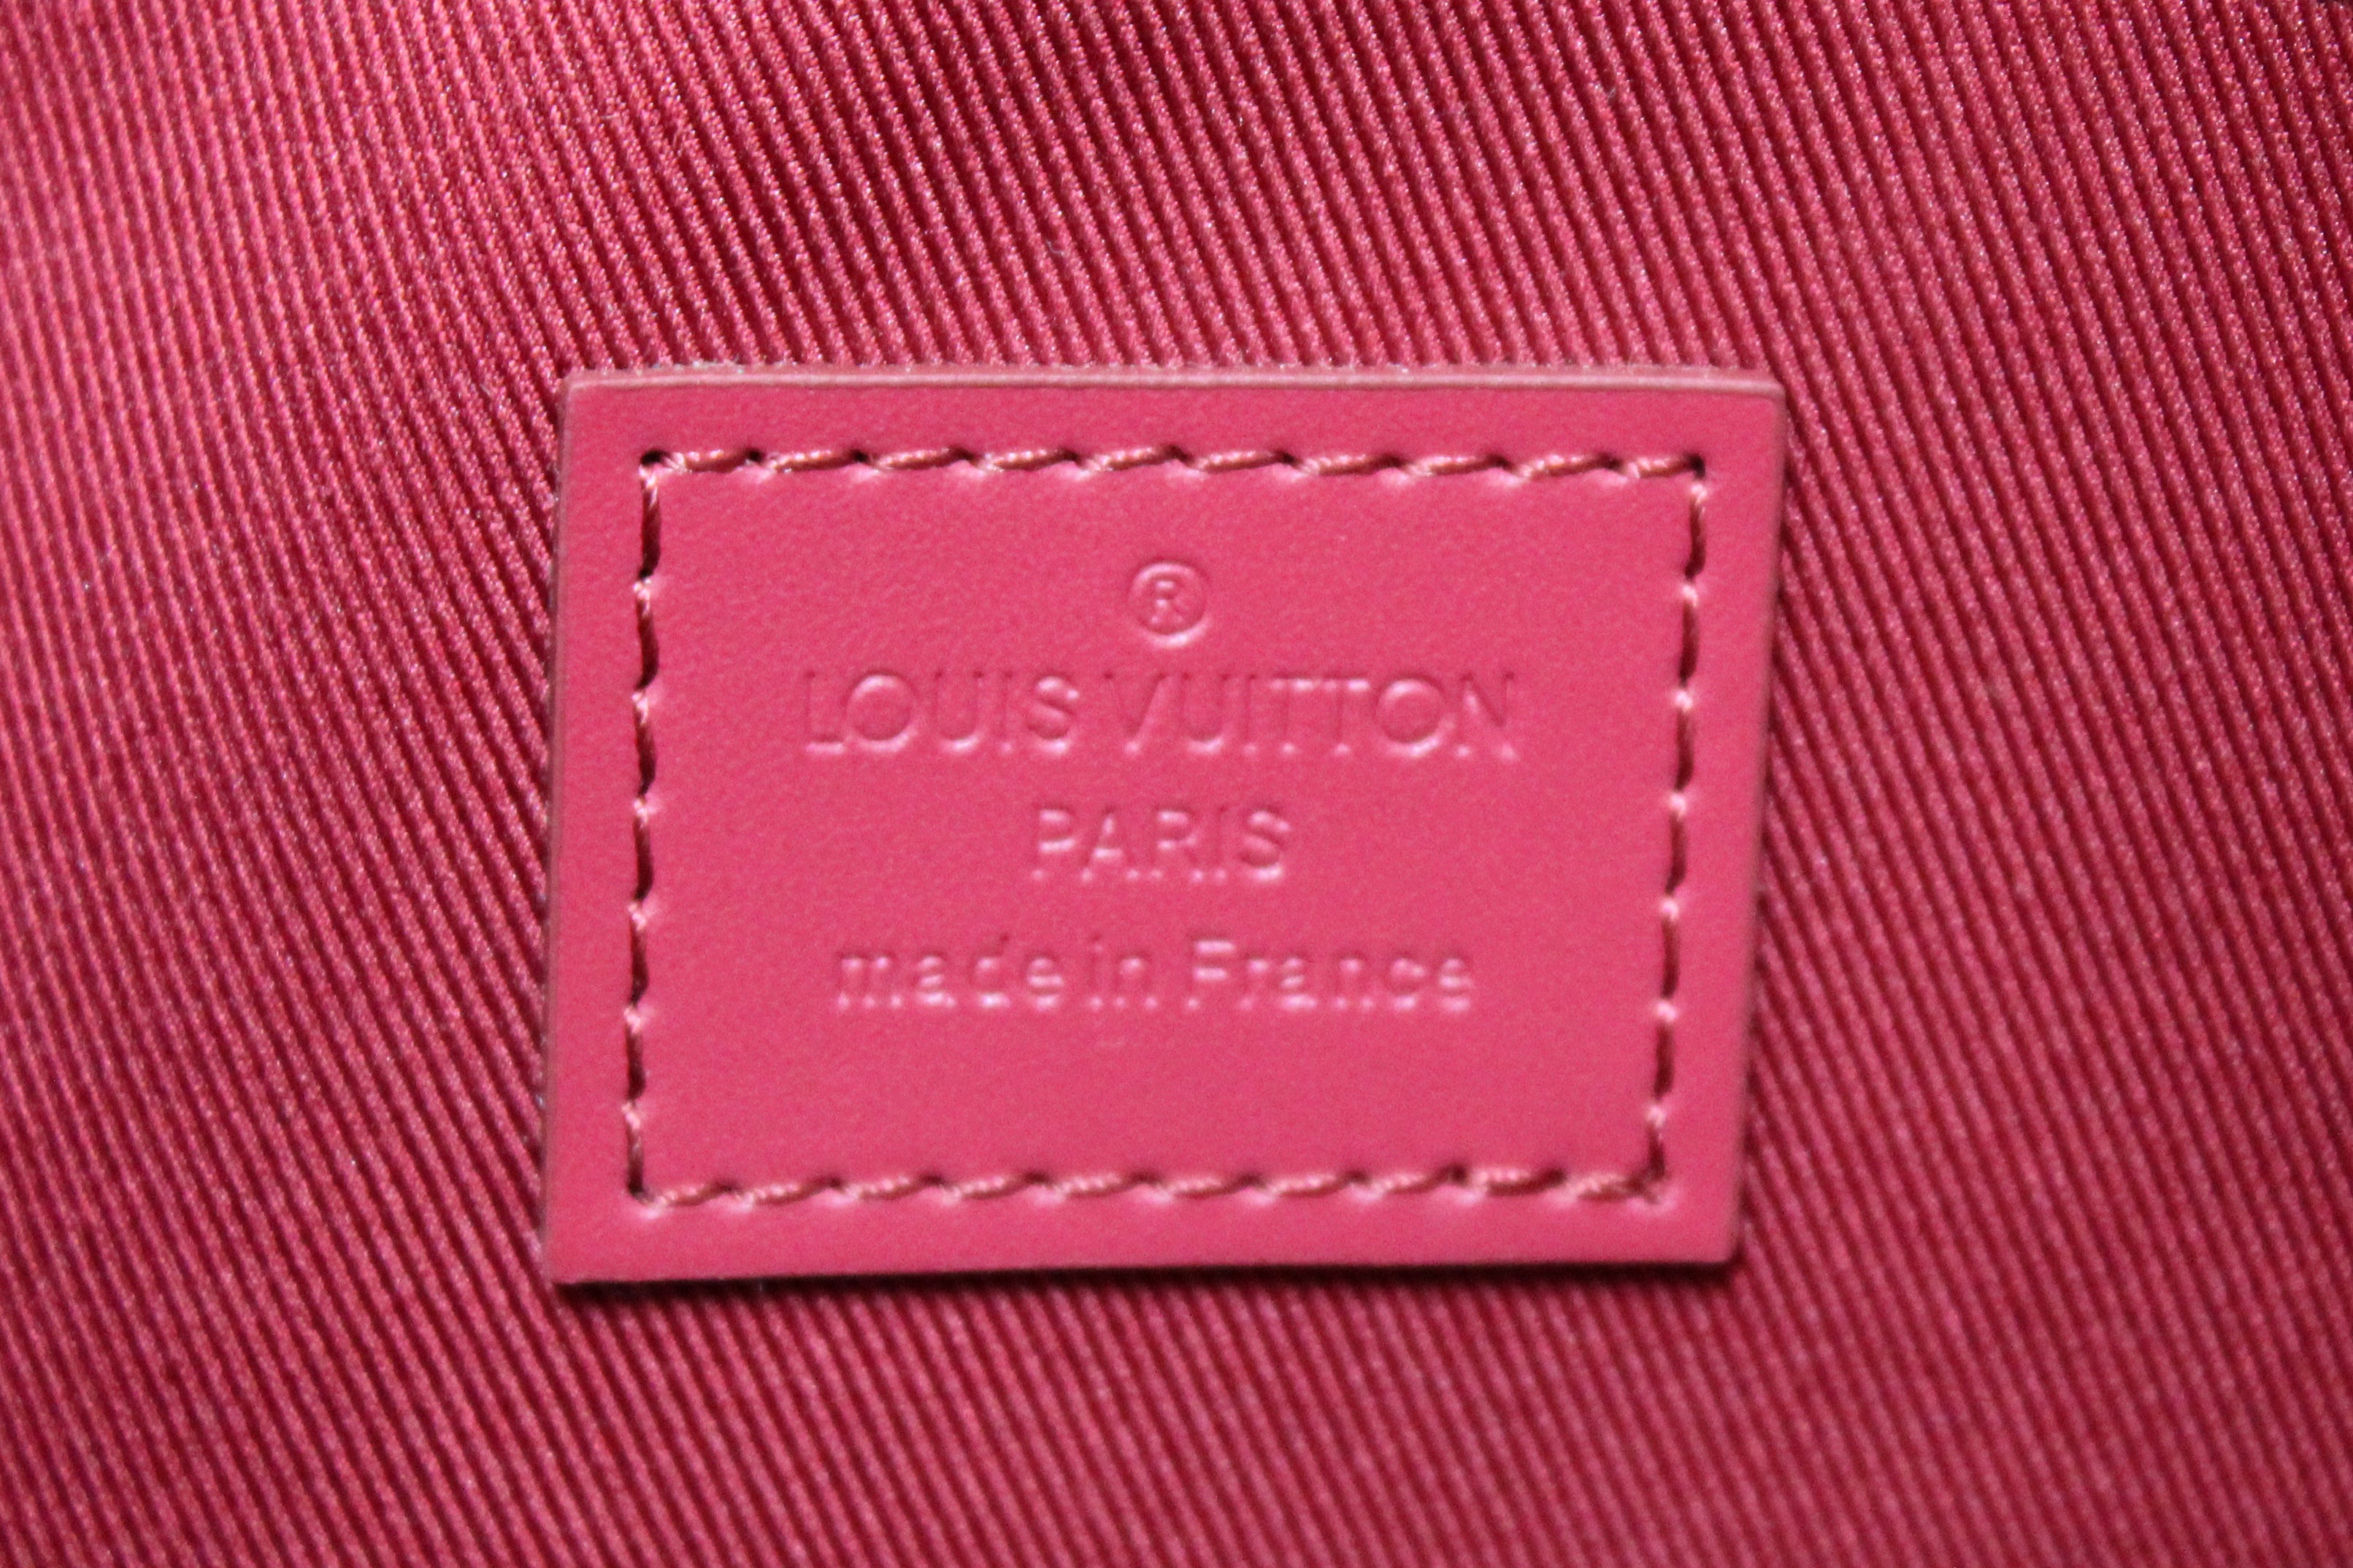 Louis Vuitton Monogram Etui Voyage MM Pouch – The Closet